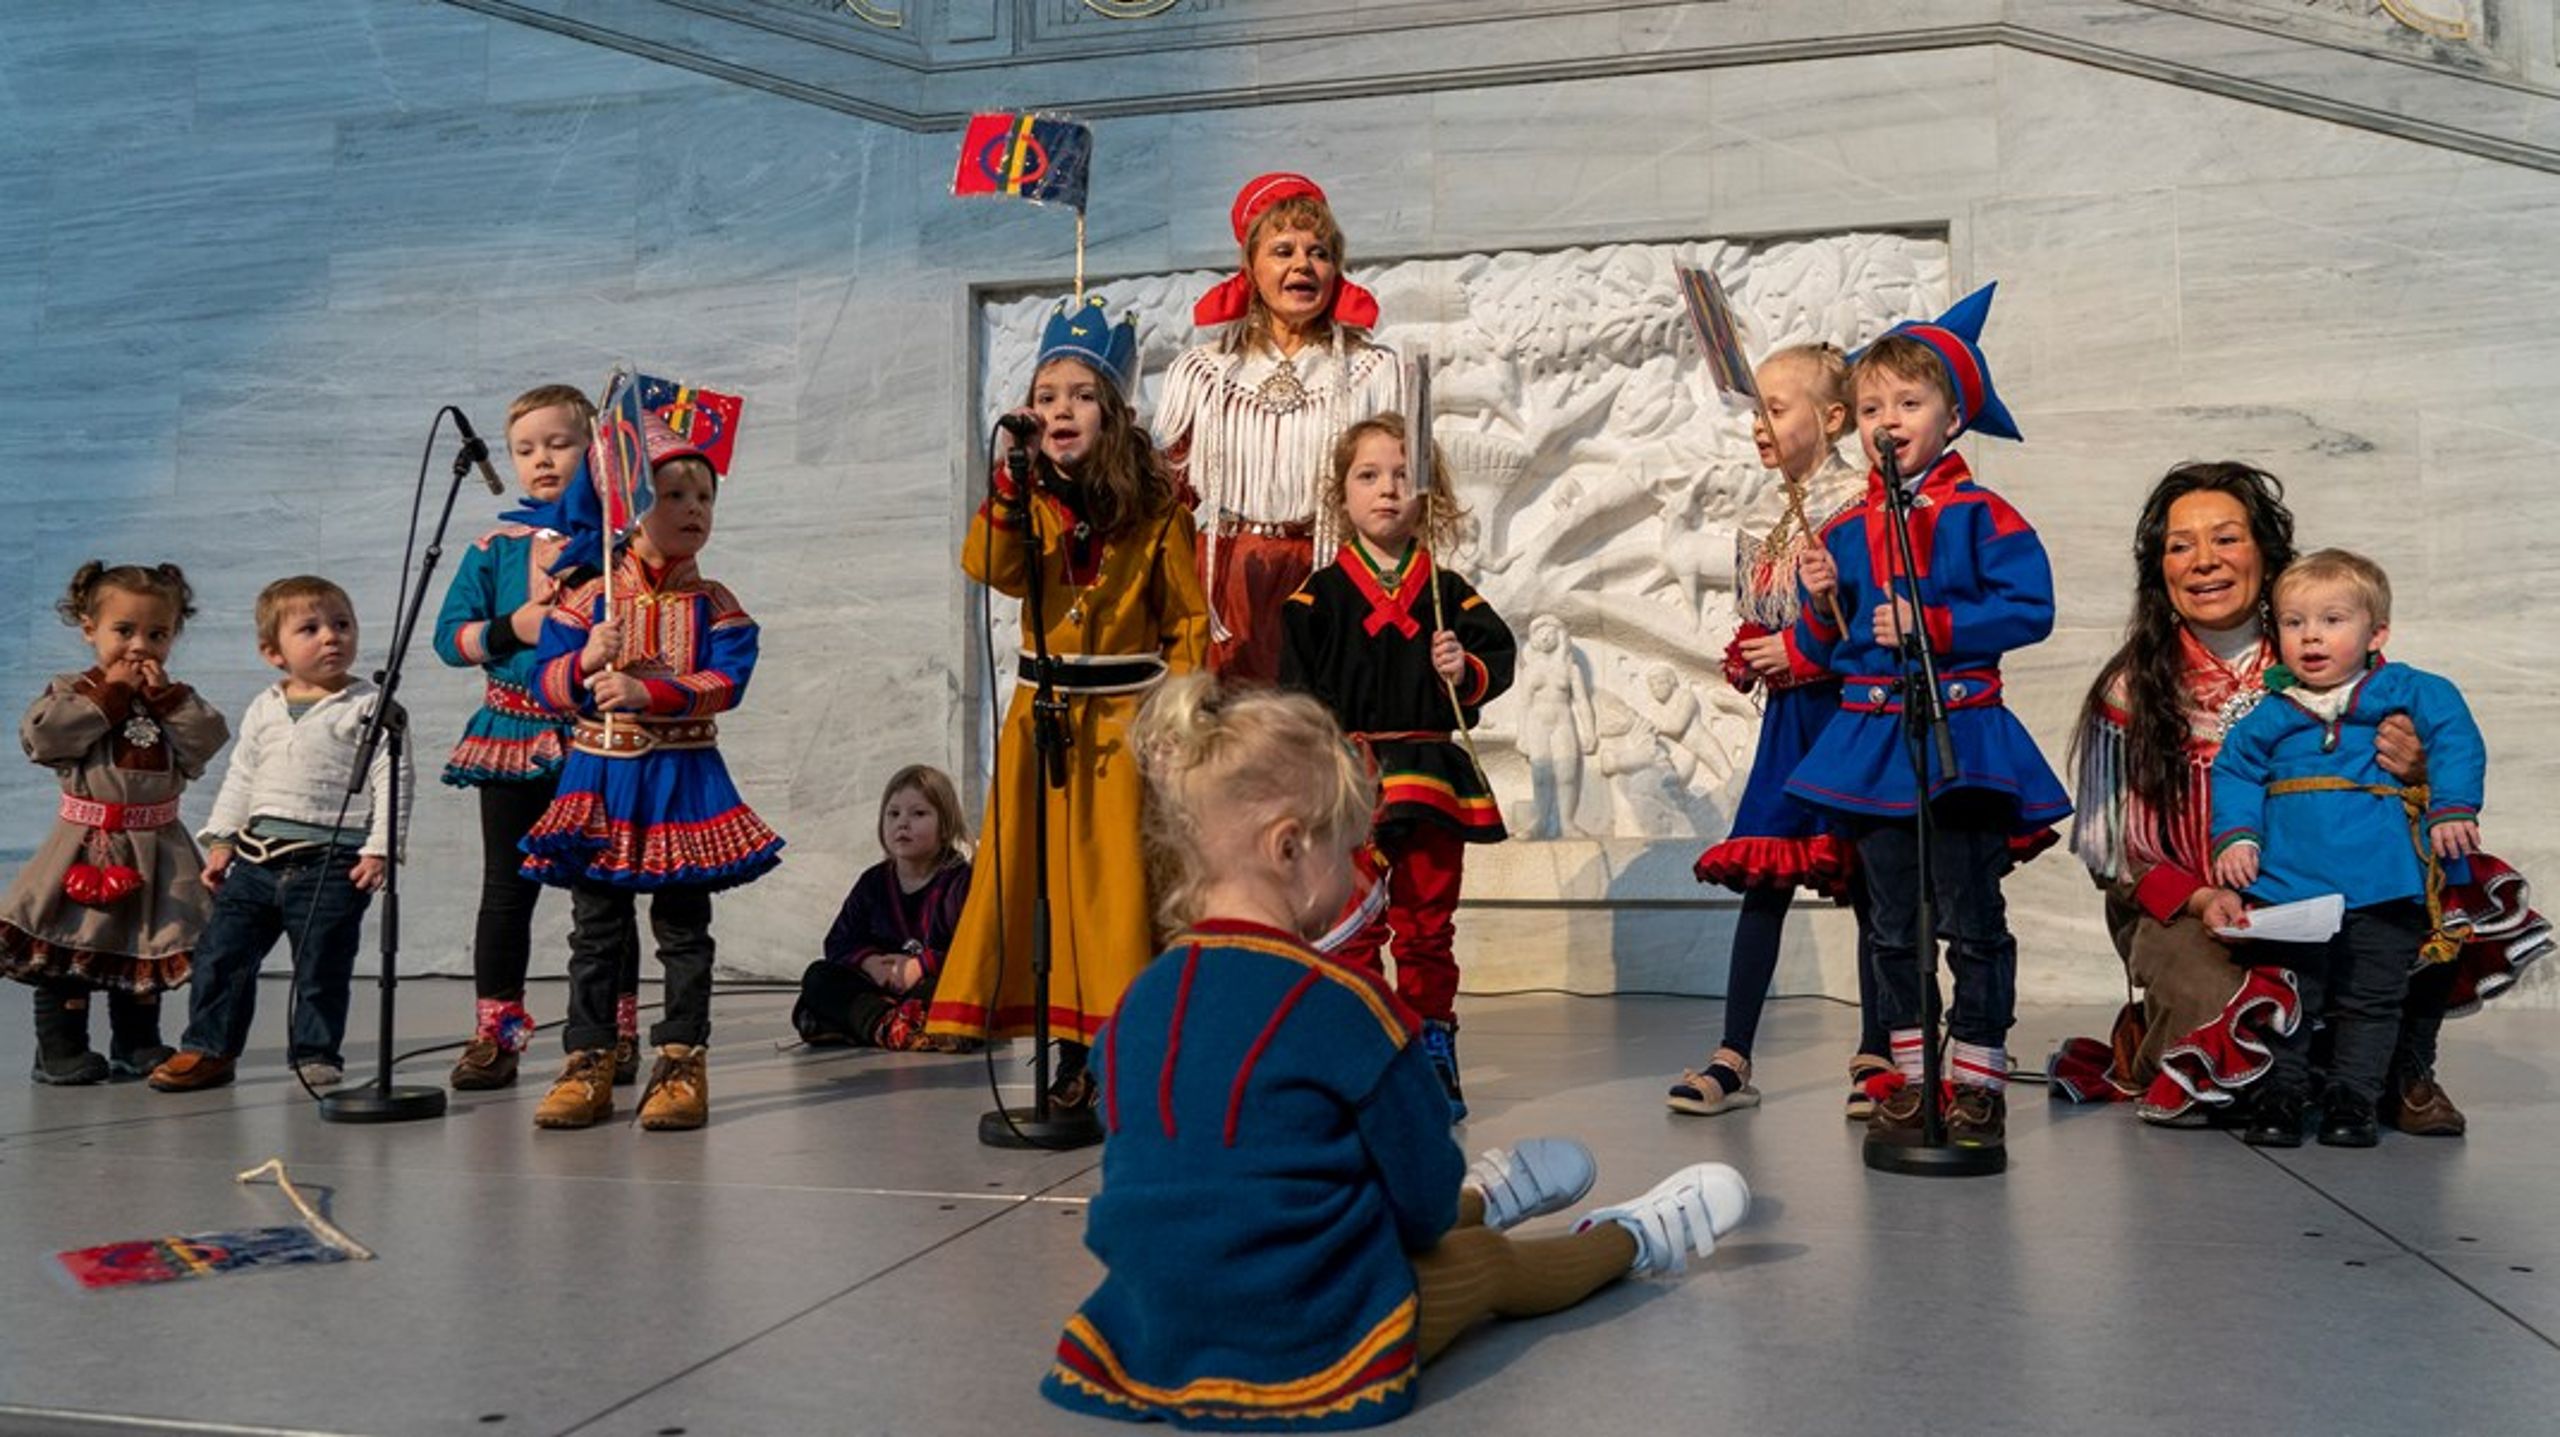 For å oppnå en positiv utviklingsspiral for samiske språk, spiller rekruttering til
samisk barnehage og skole og de samiske språkutdanningene og lærerutdanningene en nøkkelrolle. Det skriver Kunnskapsdepartementet i årets melding om samisk språk, kultur og samfunnsliv. Årets tema er kompetanse og rekruttering i barnehage, grunnopplæring og høyere utdanning. Bildet er fra feiringen av Samefolkets dag 6. februar 2022, da en samisk barnehage underholdt med musikk i Oslo rådhus.